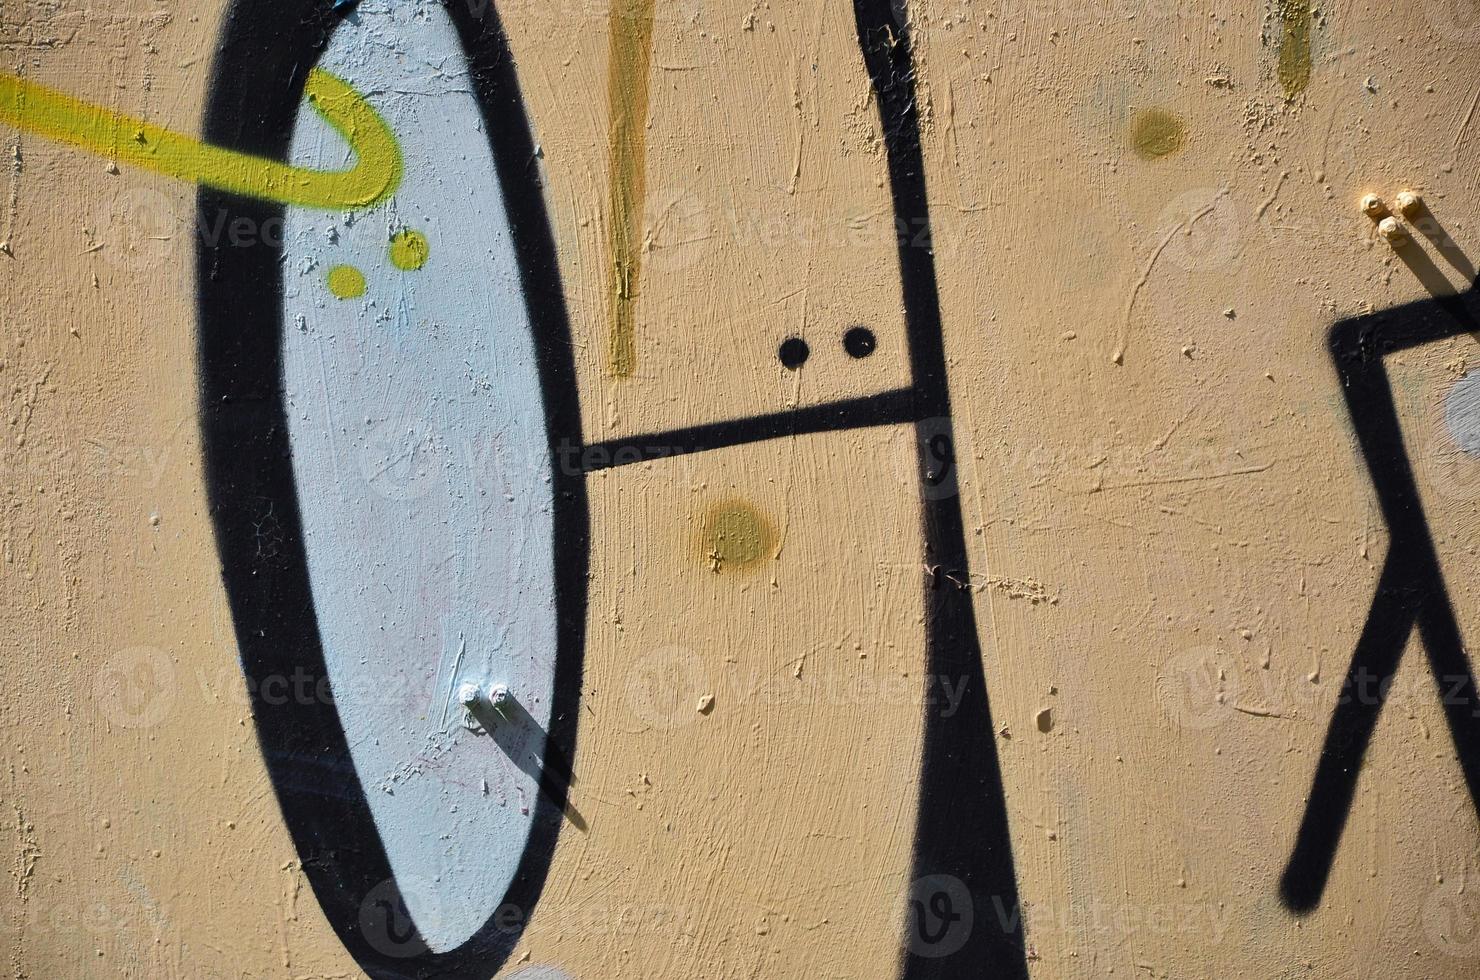 la antigua muralla, pintada en color dibujo de graffiti con pinturas en aerosol. imagen de fondo sobre el tema de dibujar graffiti y arte callejero foto